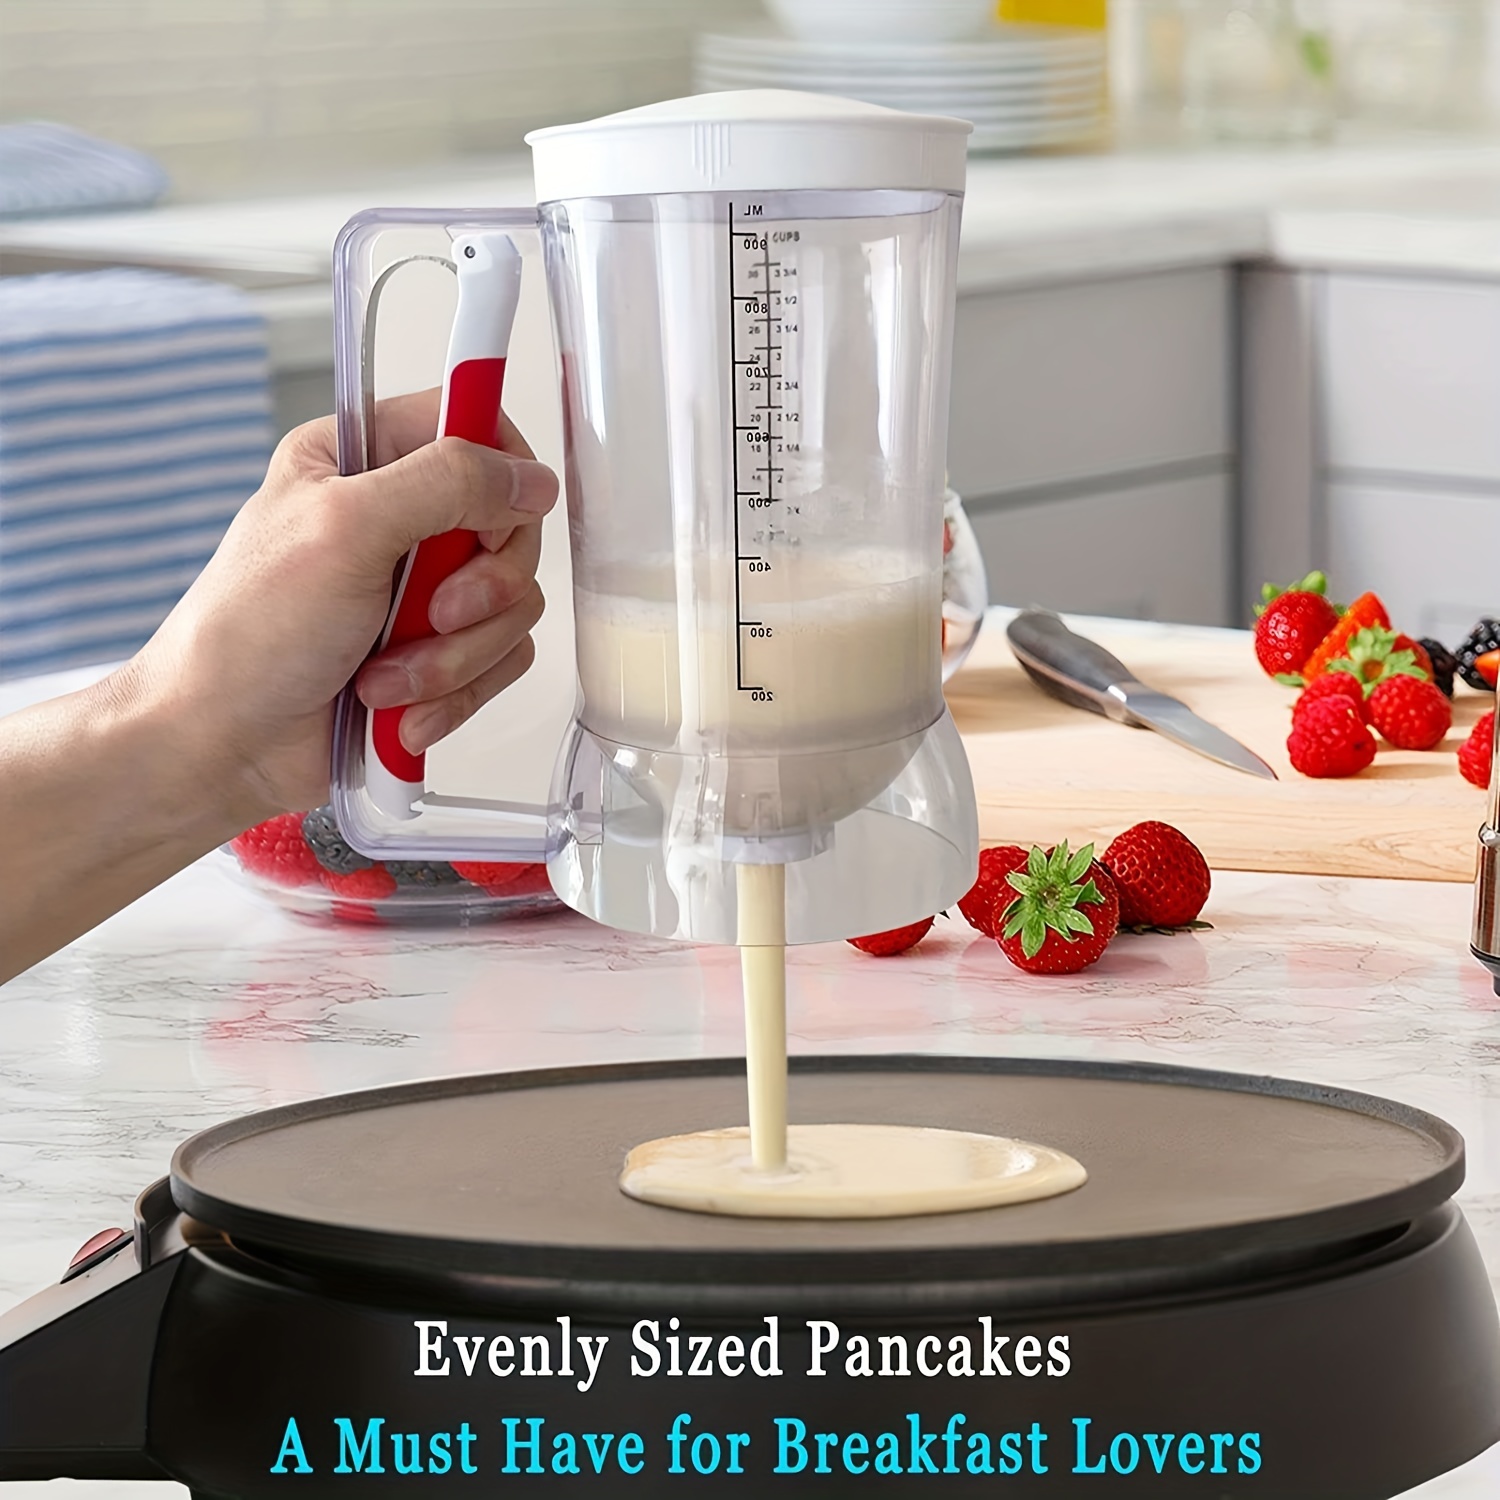 Pancake Batter Dispenser, Batter Dispenser With Handle, Pancake Dispenser  For Batter, Pancake Dispenser, Mix Dispenser For Griddle, Perfect Pancakes,  Cupcake, Waffle, Muffin Mix, Cake, Kitchen Tools, Baking Tools, Baking  Supplies - Temu